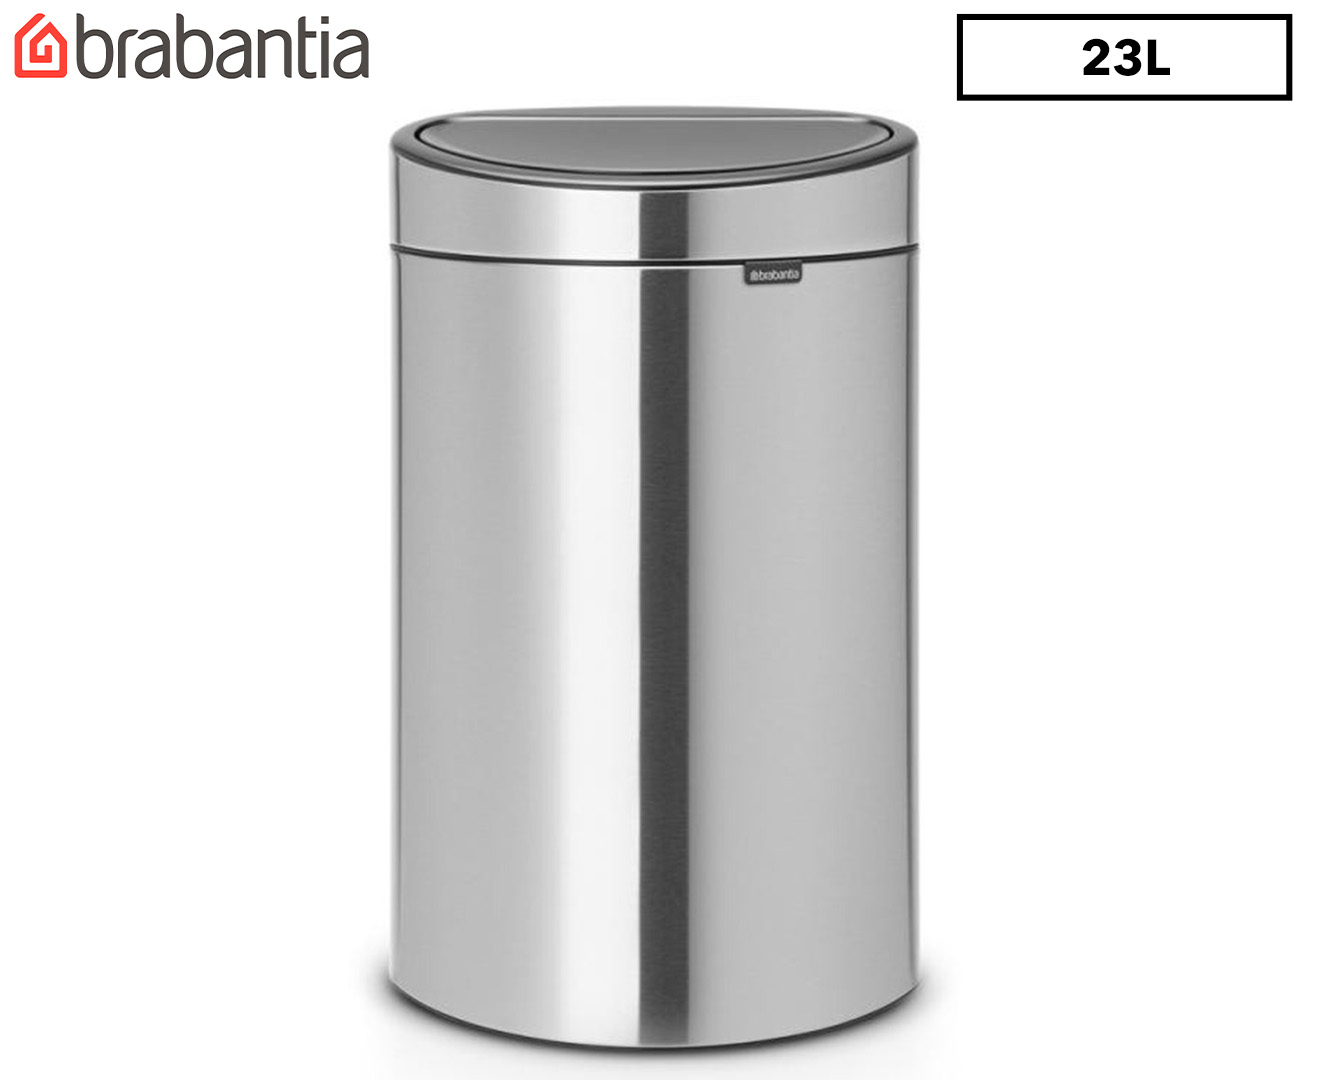 Yarebest 2 Liter Mini Desktop Waste Bin with Push Lid Bathroom Dustbin Grey 